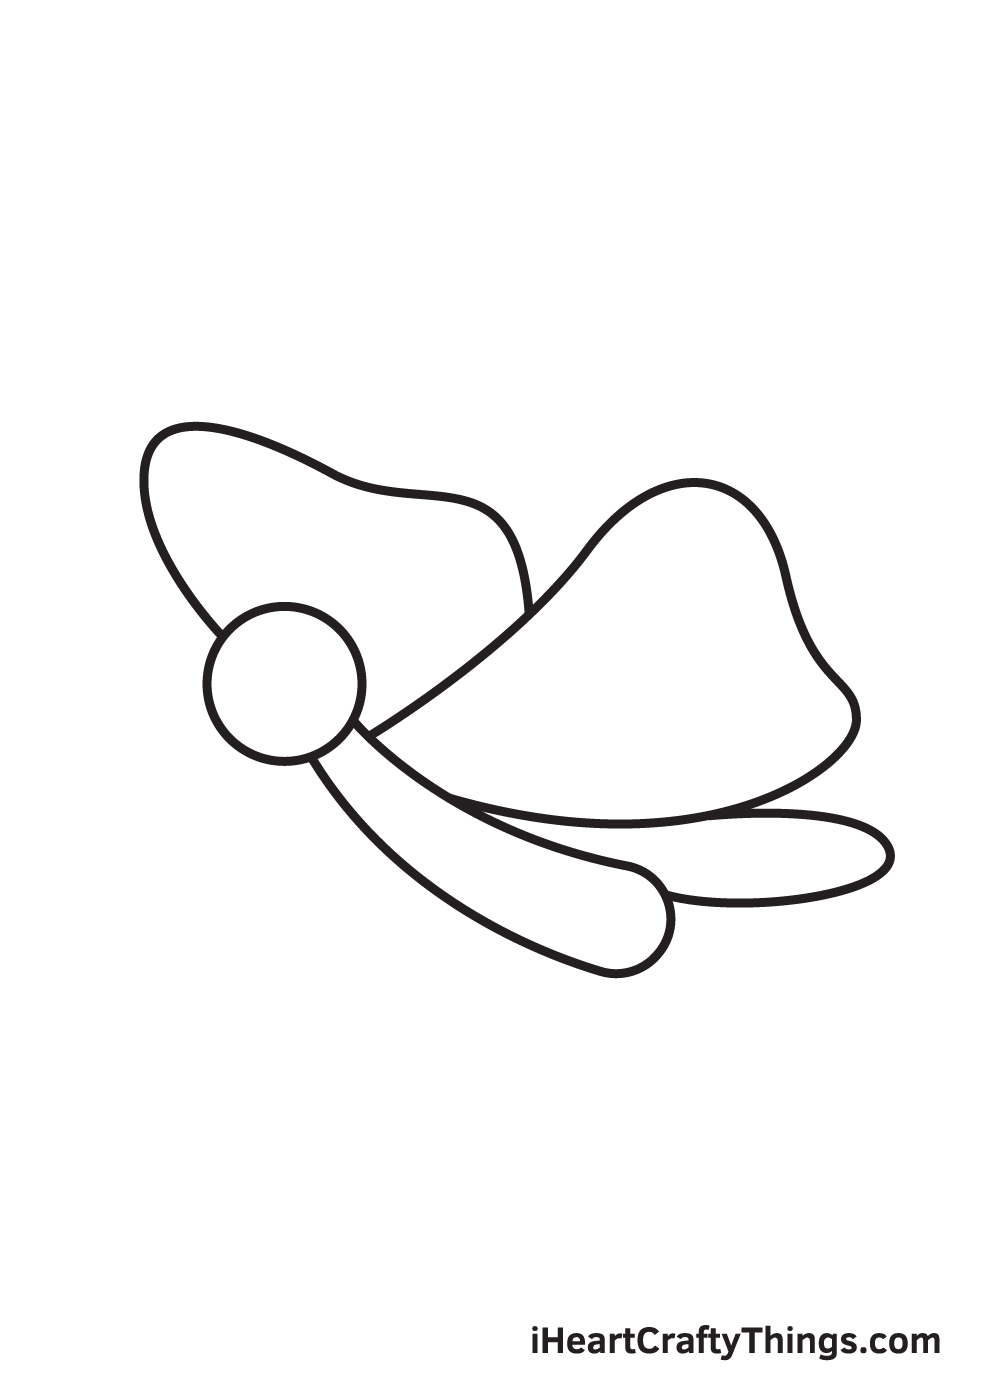 Butterfly DRAWING – STEP 5 - Hướng dẫn cụ thể kiểu vẽ con cái bướm giản dị và đơn giản với 9 bước cơ bản